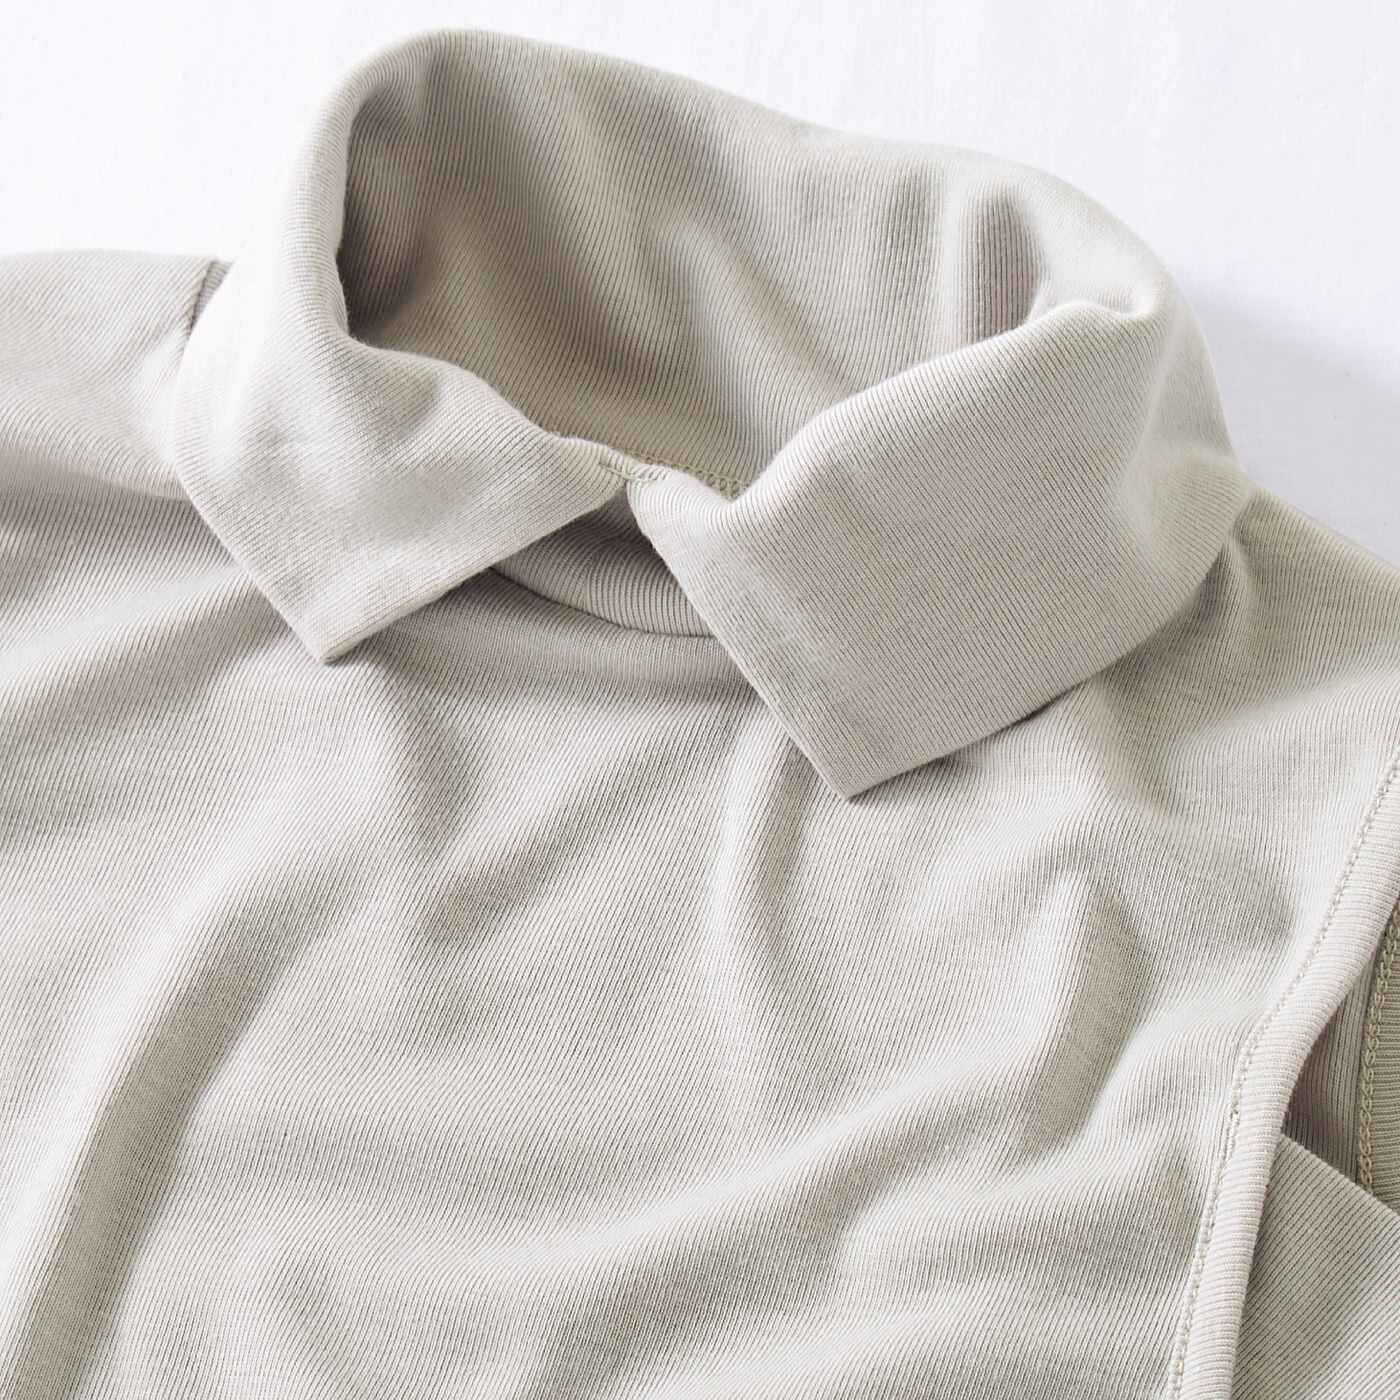 flufeel|シャツ見えできちんと印象にチェンジ　衿付きタンクトップの会|伸縮性のあるカットソー素材で着心地も快適です。